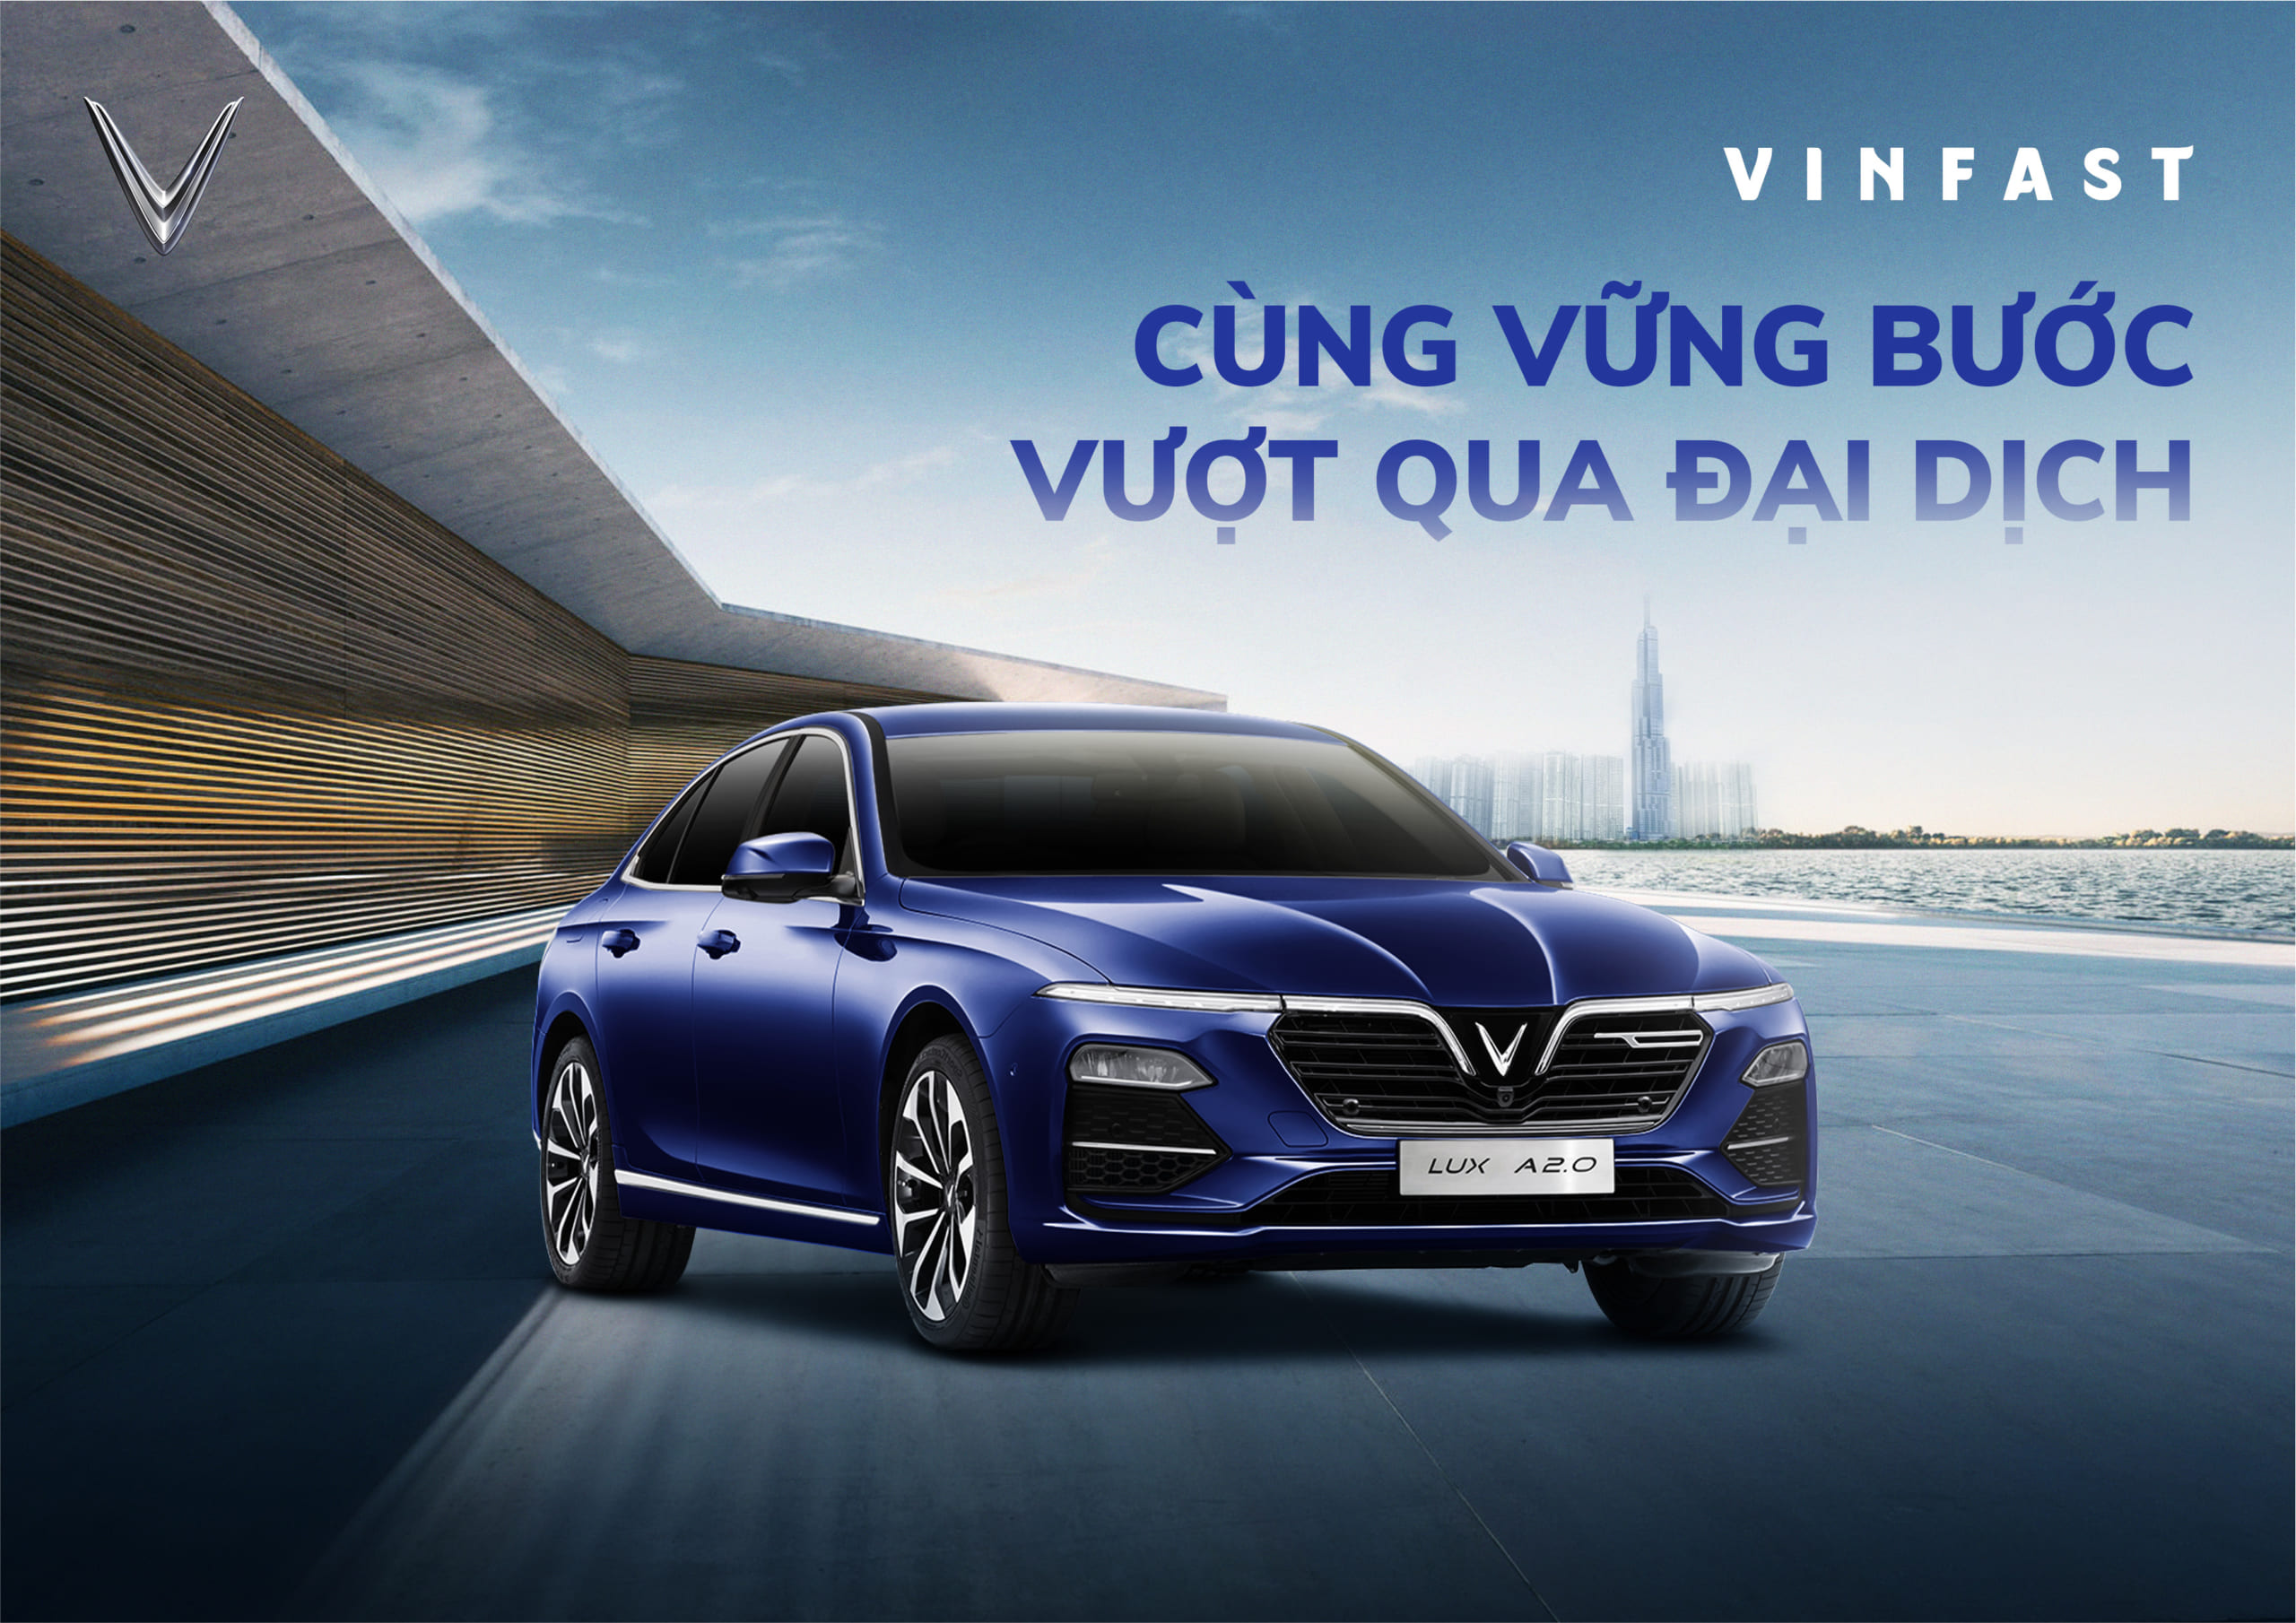 Hơn 3500 xe VinFast được tiêu thụ trong tháng 62021 dù ảnh hưởng dịch  Covid19  Vinfast Long Biên